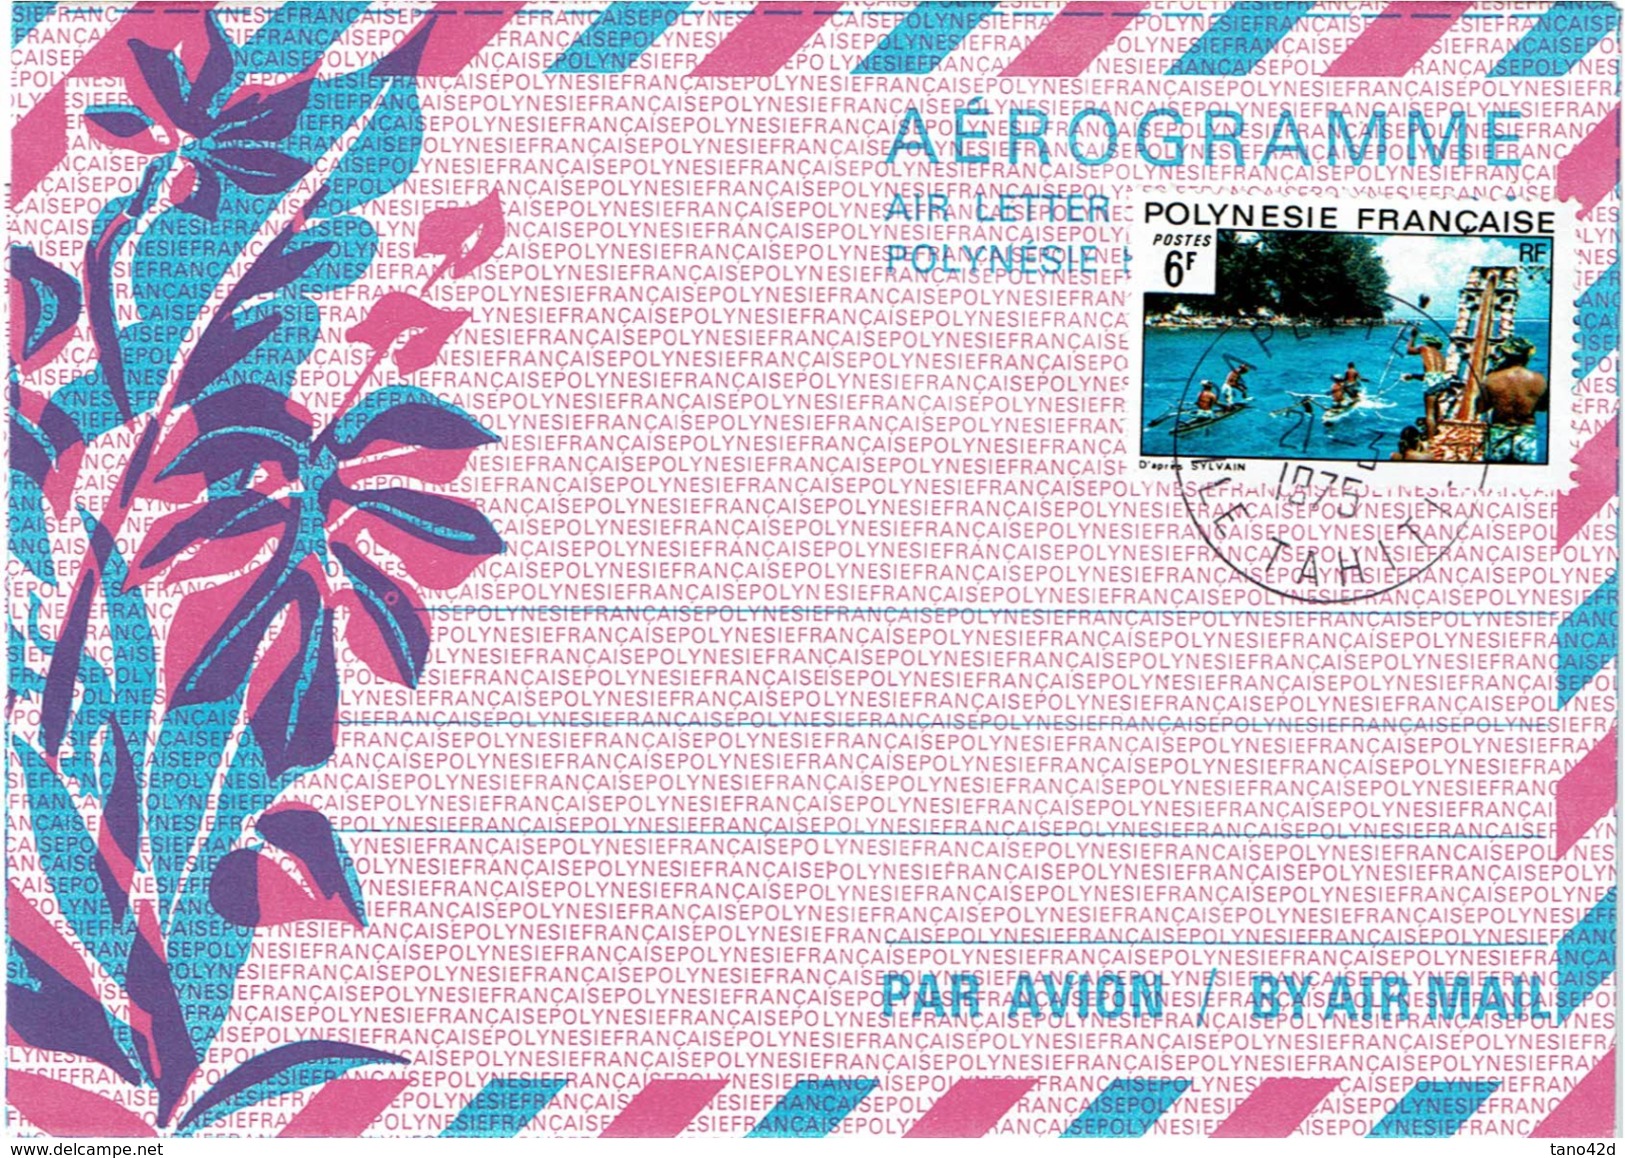 REF BR39 - POLYNESIE FRANCAISE - AEROGRAMME N°1 20F AVEC TPM 6F OBL. - Aérogrammes